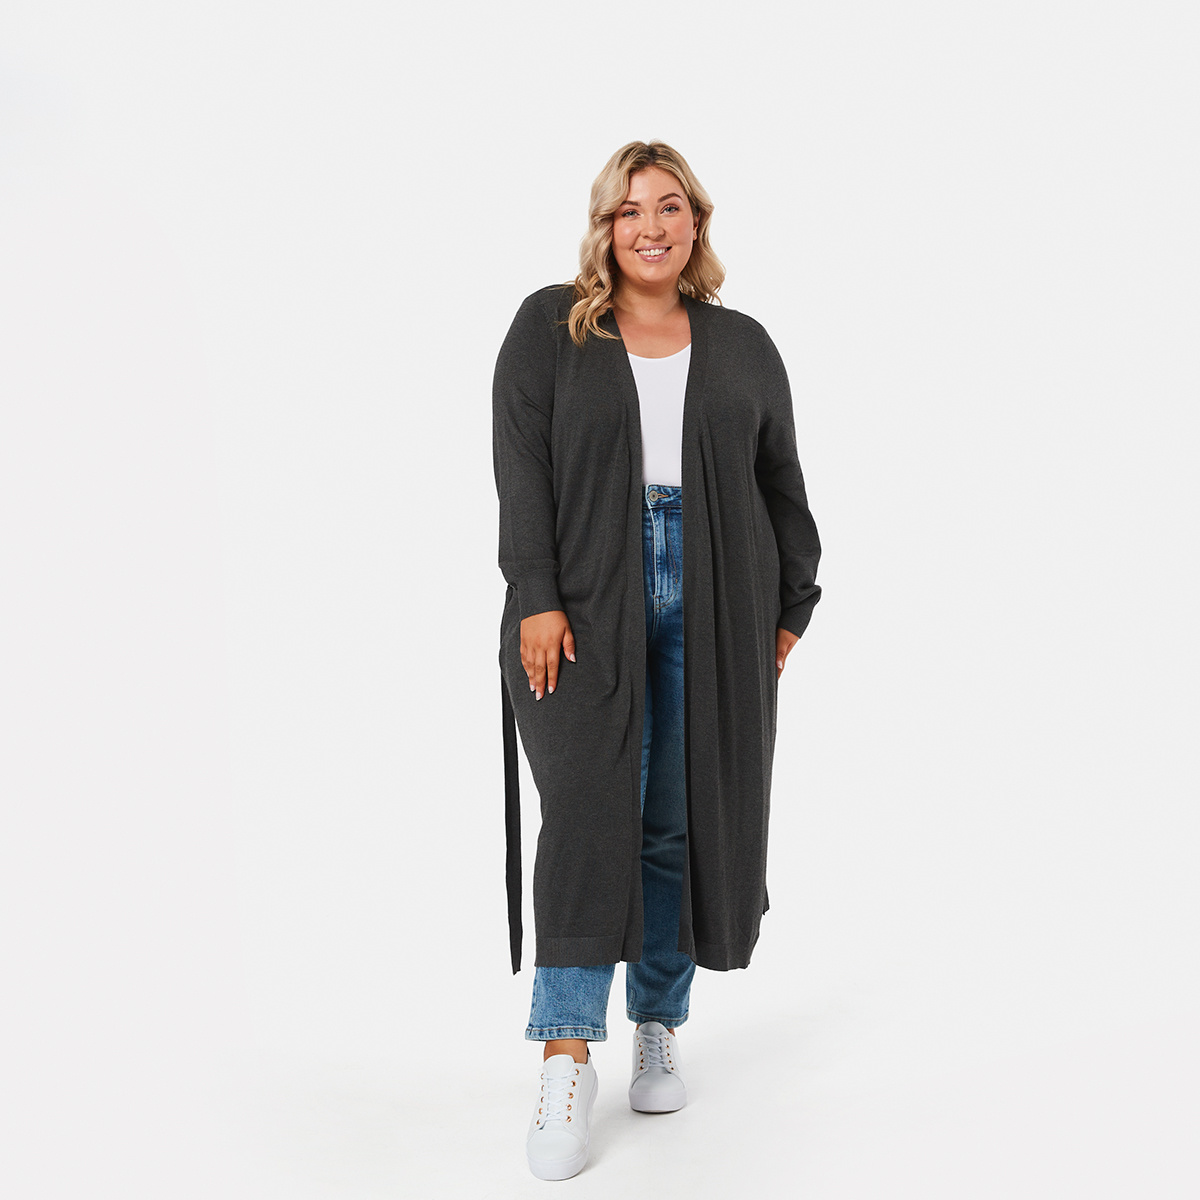 Plus Size Clothes Online | Kmart | Beanstalk Single Mums